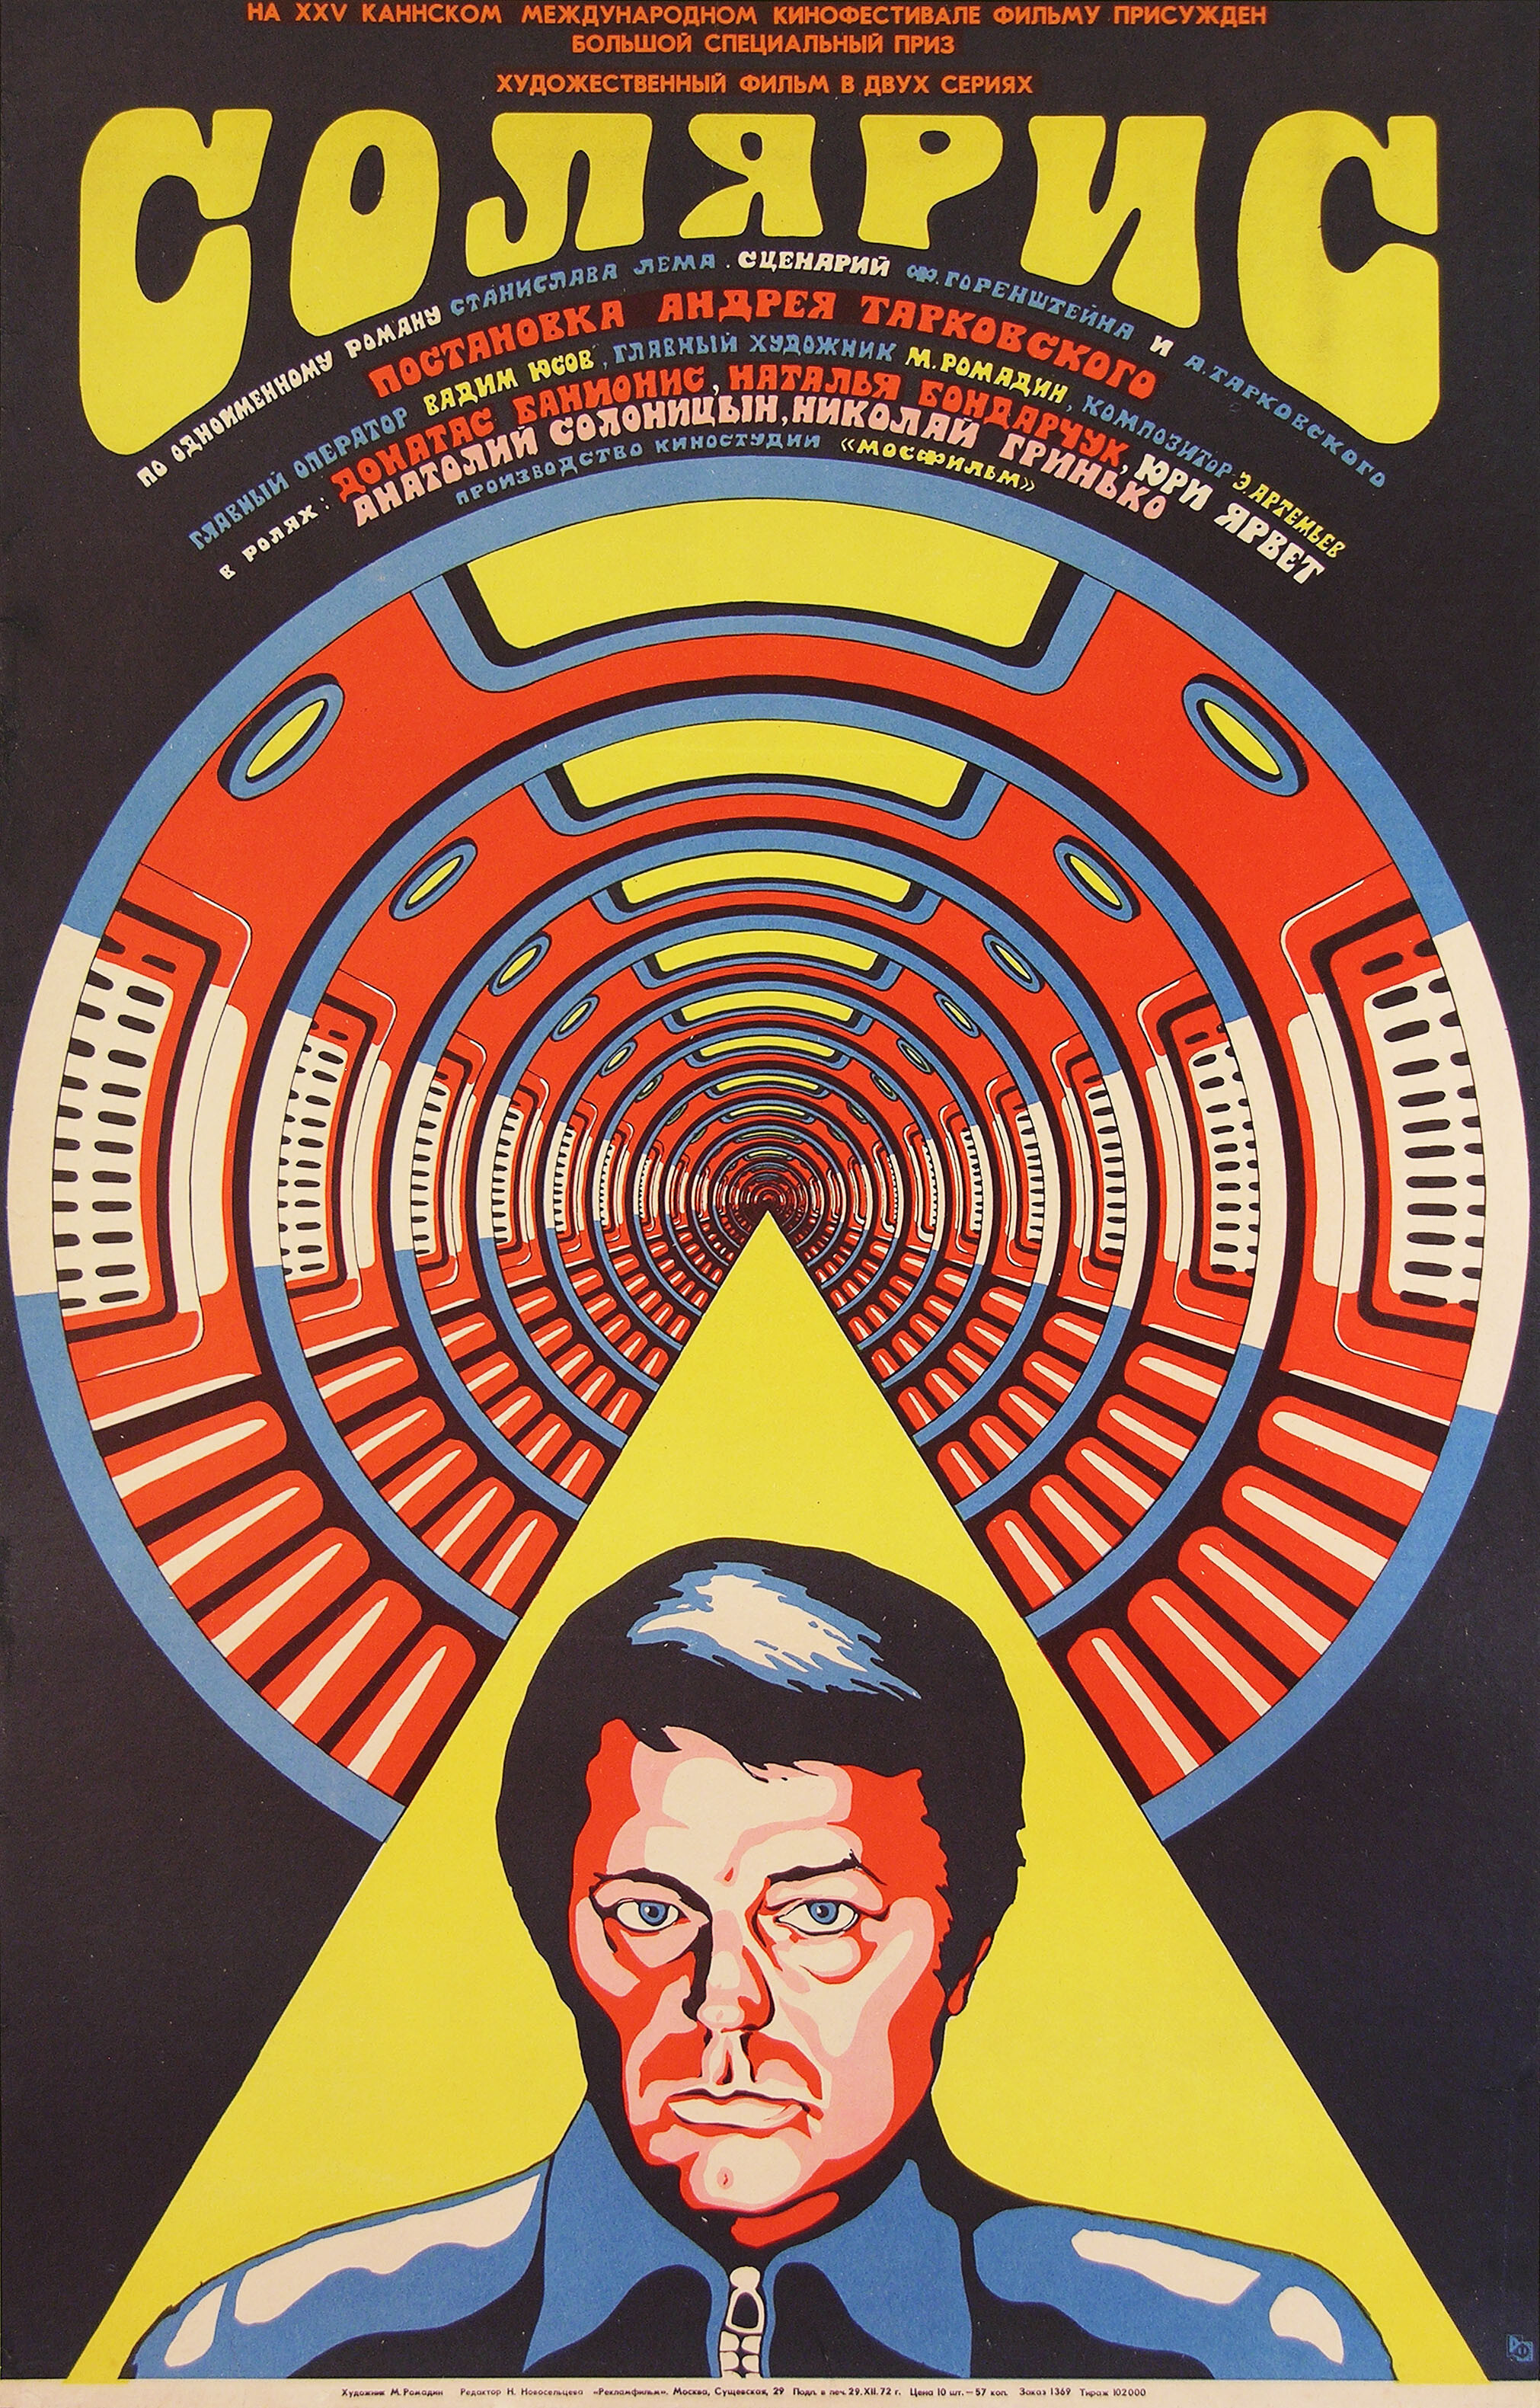 Солярис (Solaris, 1972), режиссёр Андрей Тарковский, советский постер к фильму, автор Михаил Ромадин (графический дизайн, 1974 год)